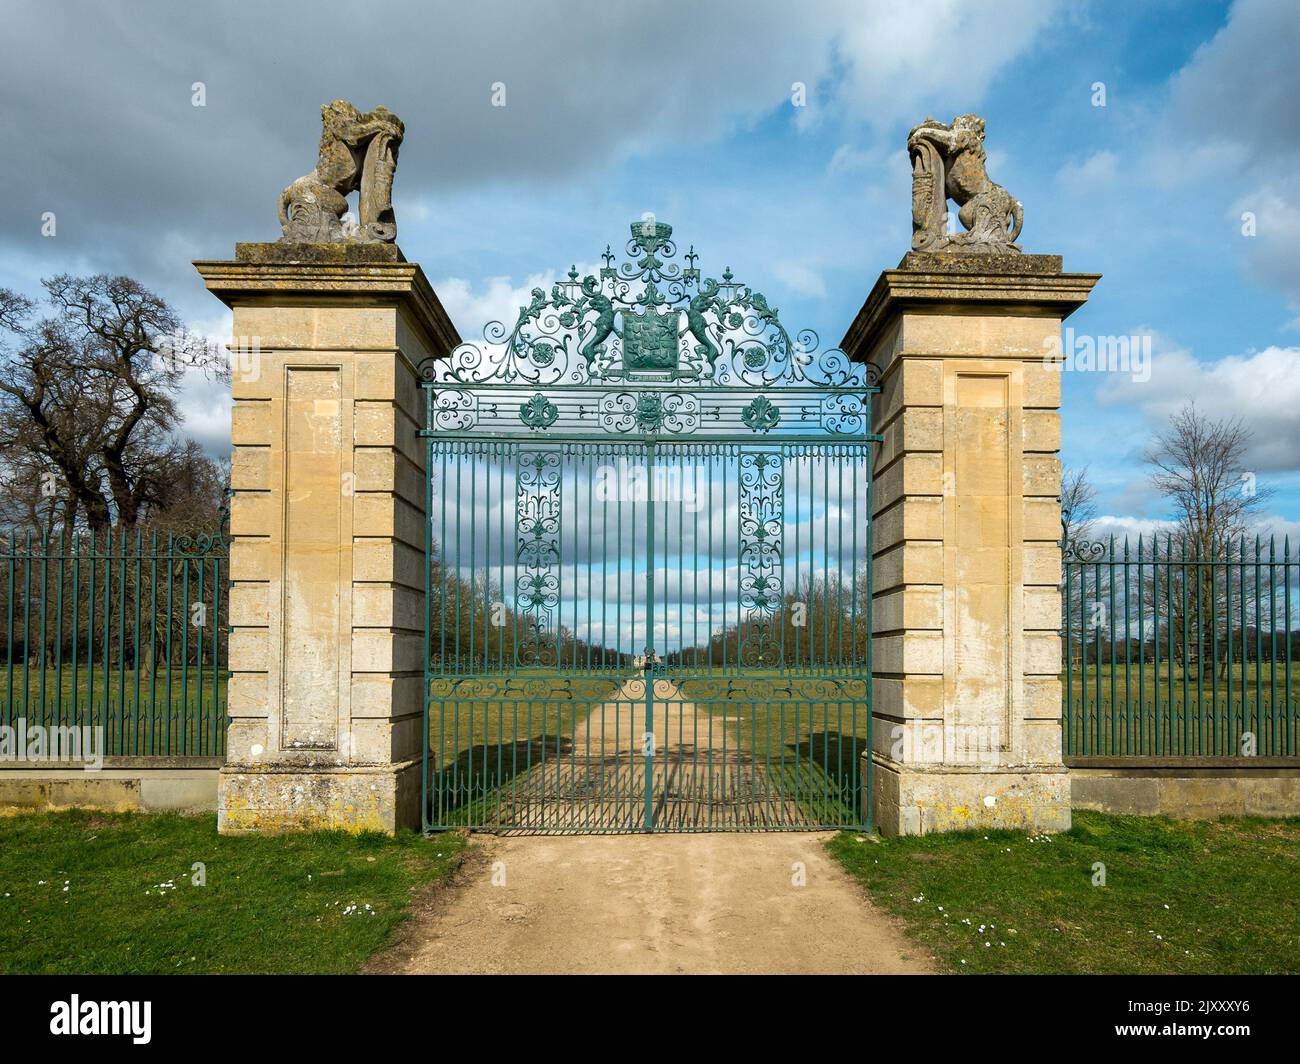 L'entrée de Grantham se trouve à Belton Park et le domaine de Belton House, Grantham, Lincolnshire, Angleterre, Royaume-Uni Banque D'Images